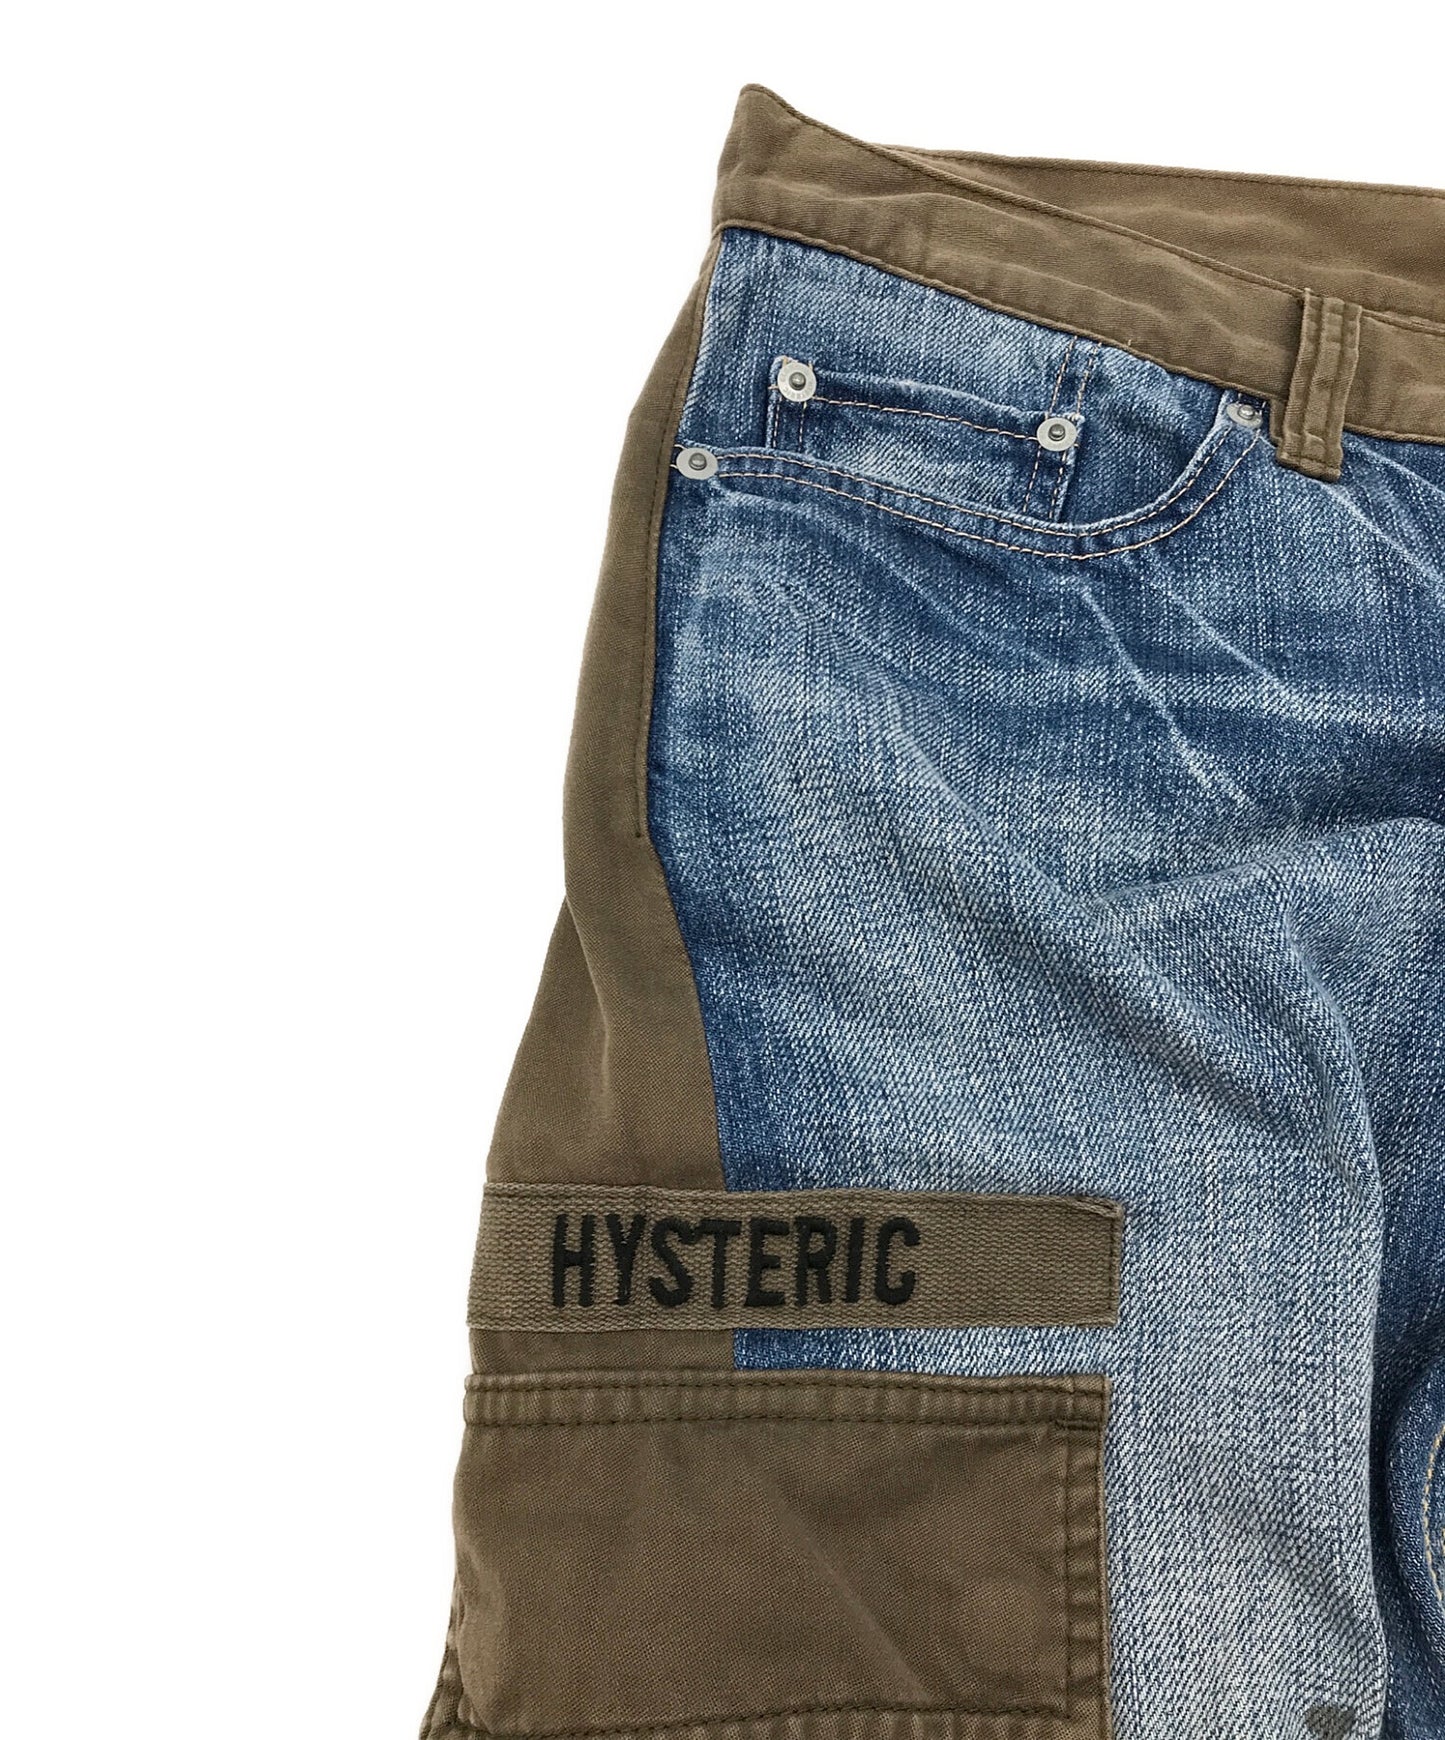 ความเย้ายวนใจ Hysteric Docking กางเกงยีนส์ผอมกางเกงยีนส์กางเกงผอม 0293AP04